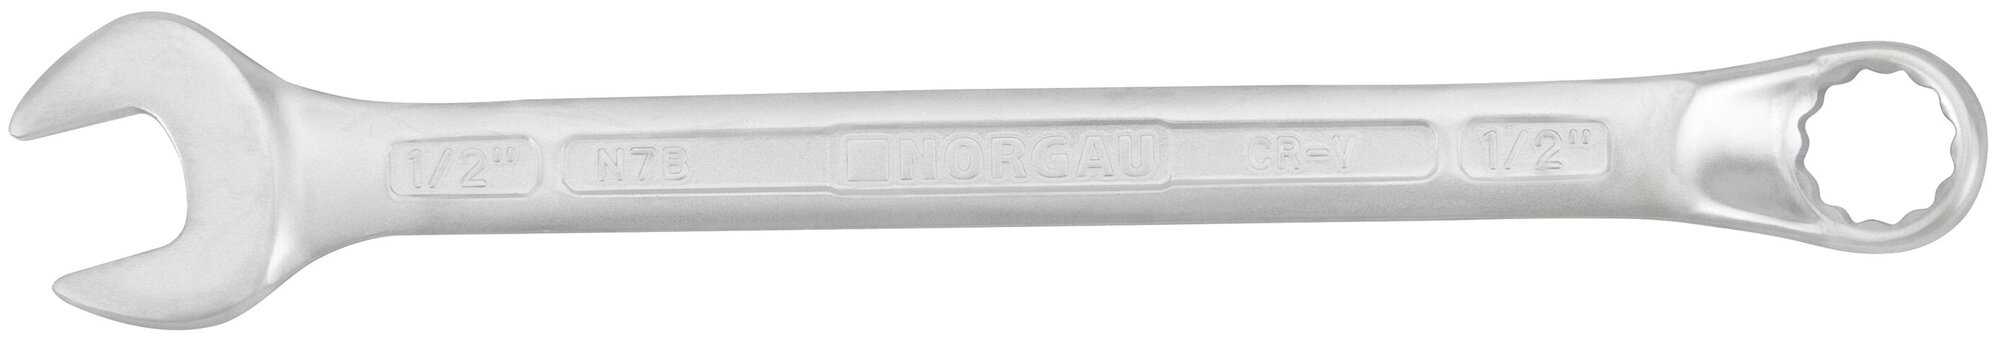 Ключ гаечный 1/2" NORGAU Industrial, "HРM" High precision machining 180 мм, рожковый и накидной профиль.